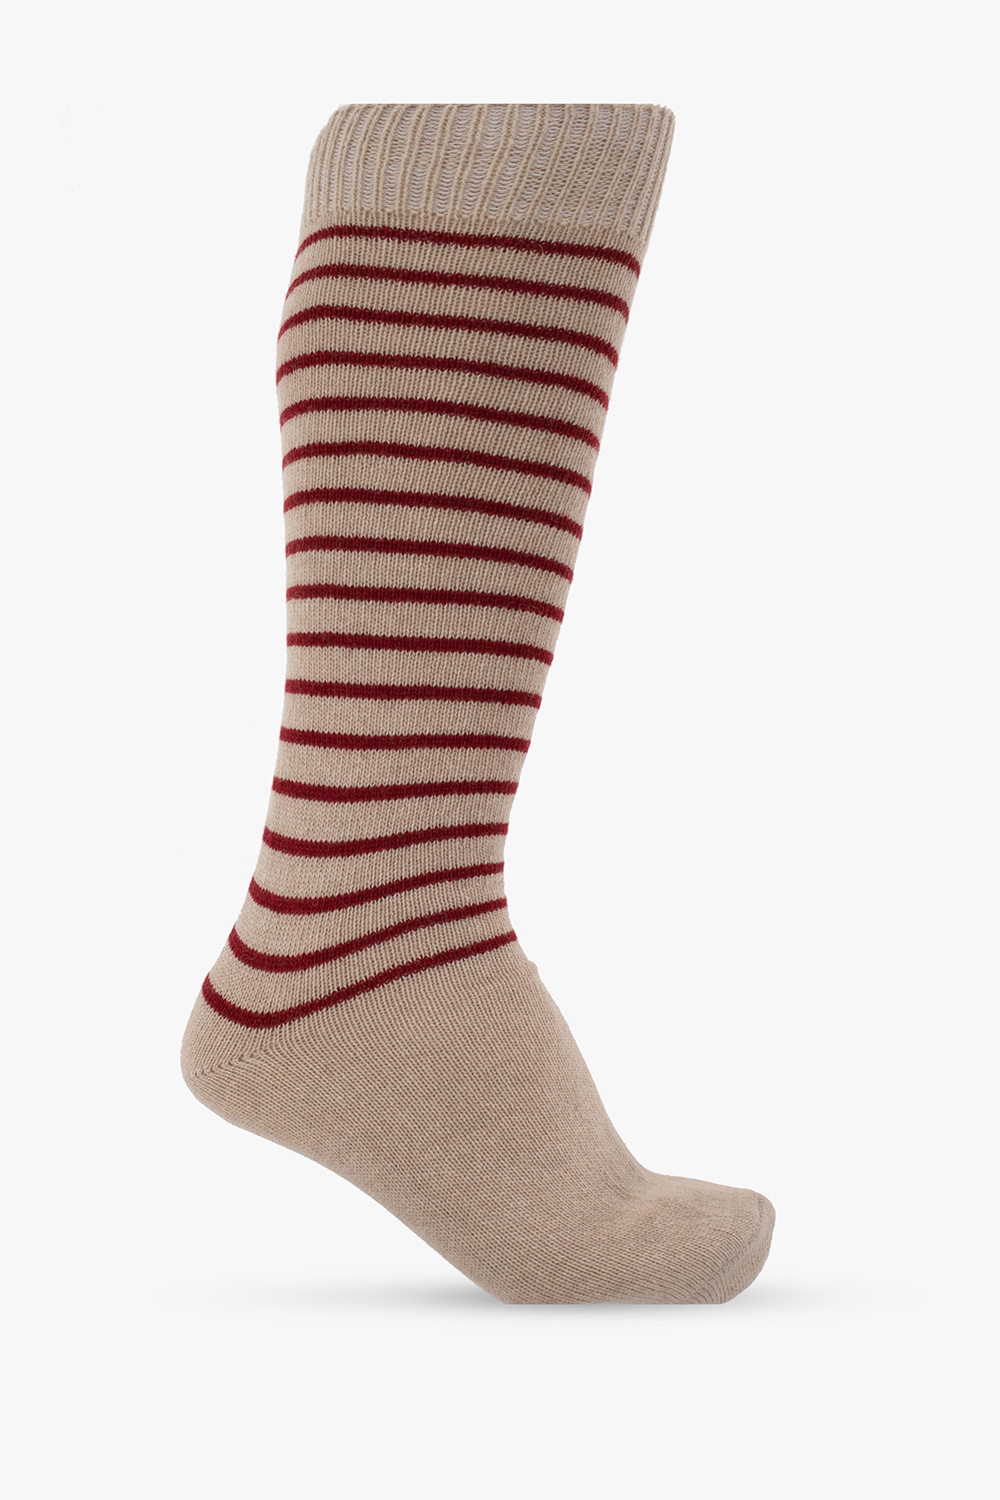 Emporio Armani Striped socks